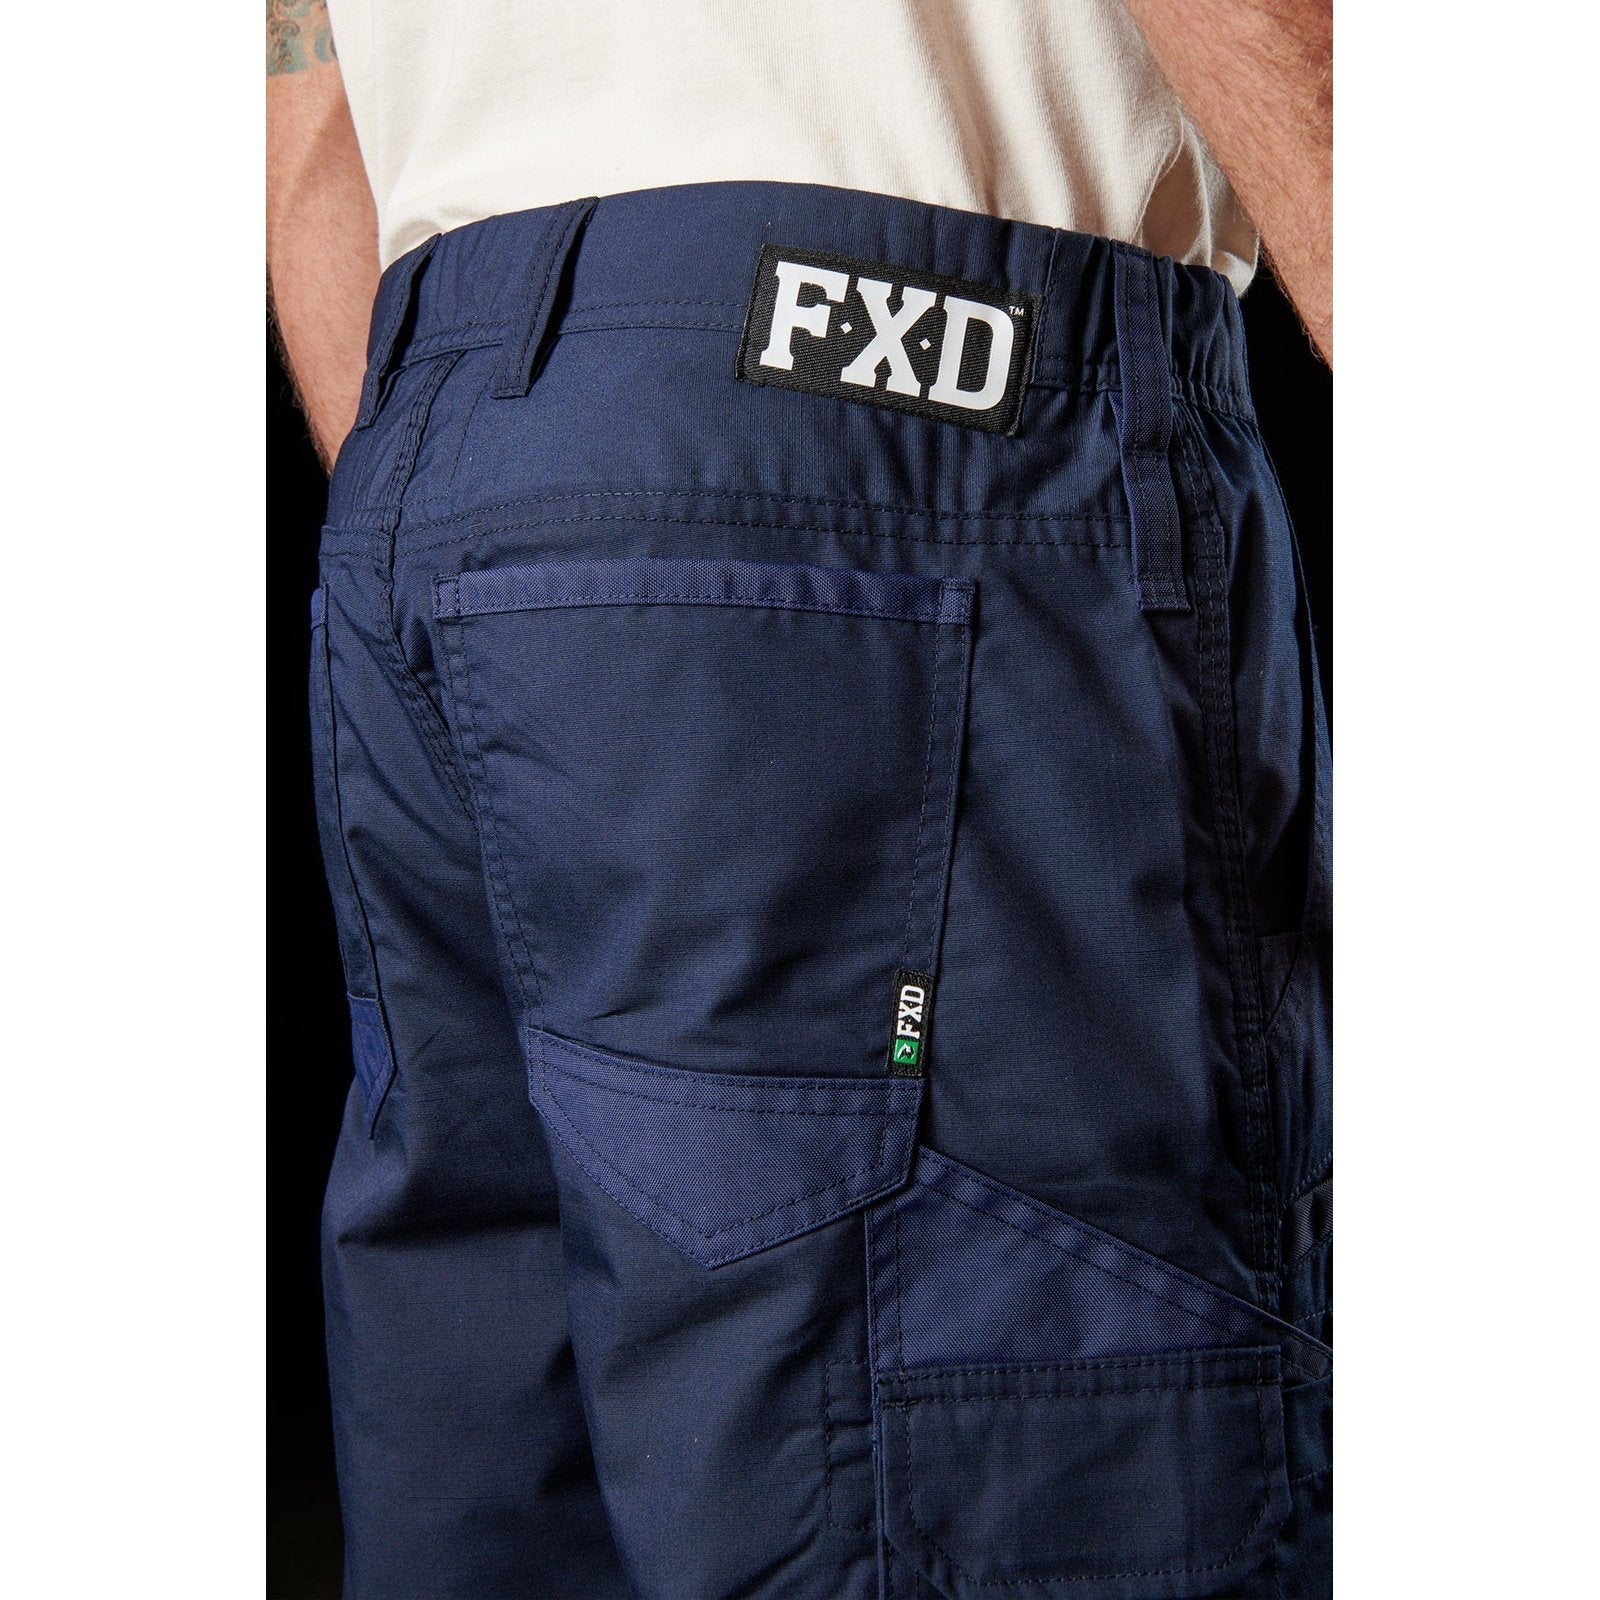 FXD Lightweight Work Pant WP-5 | Blue Heeler Boots